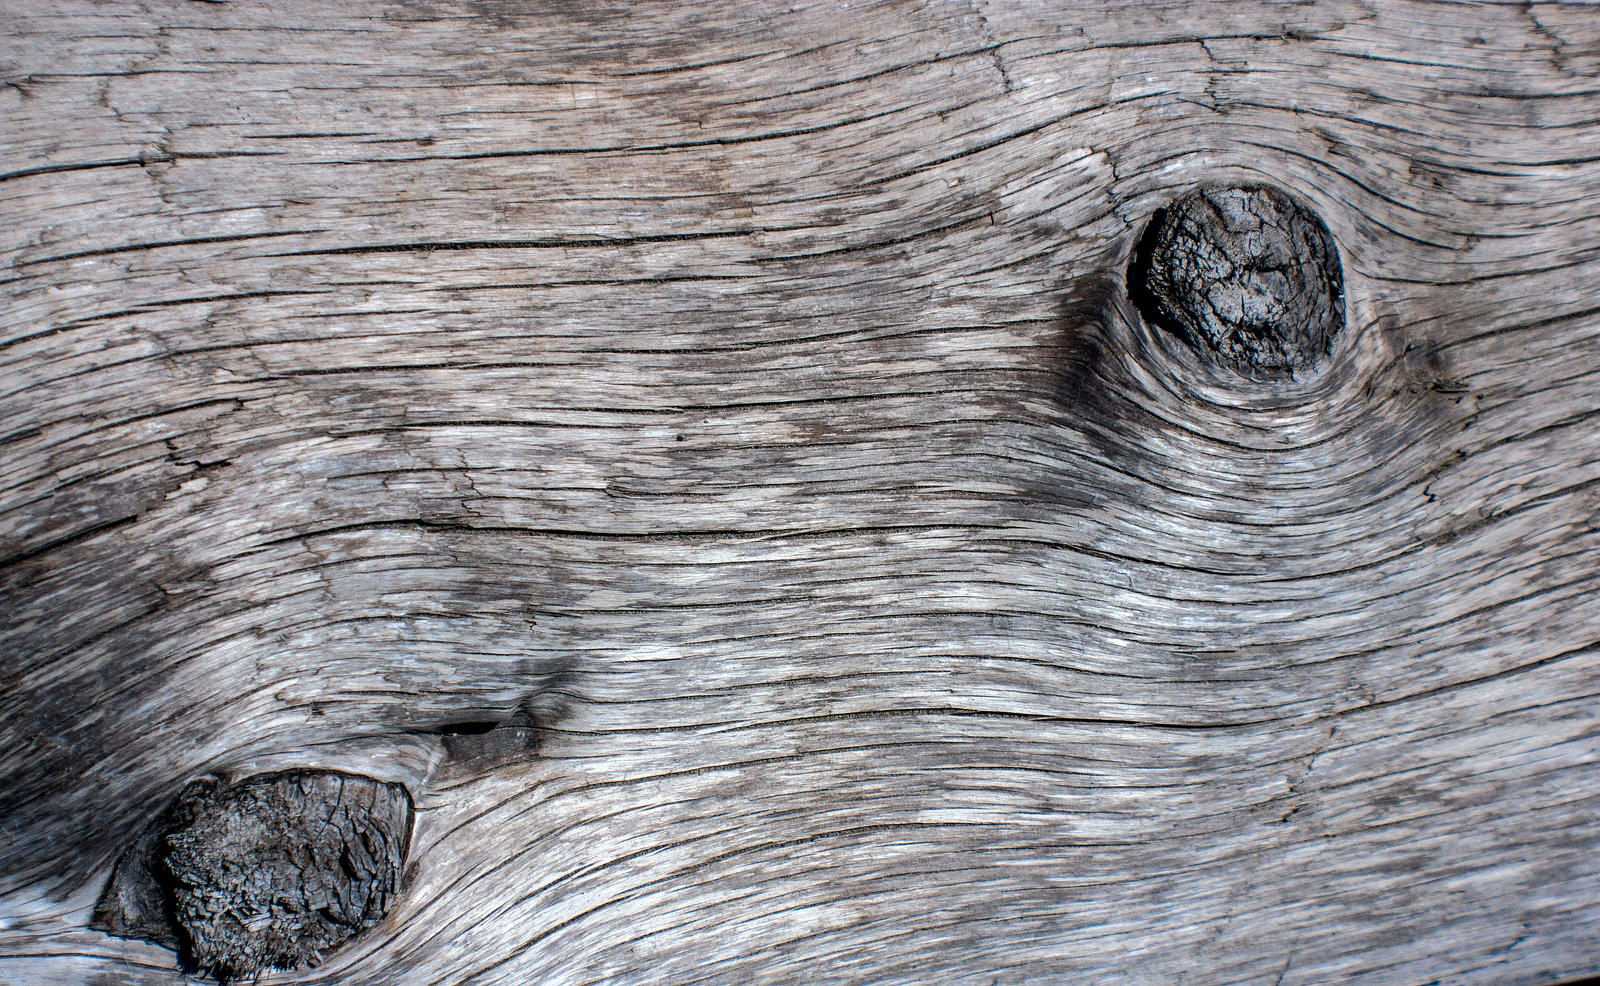 Driftwood Texture 13 By Kariloumc On Deviantart HD Wallpapers Download Free Map Images Wallpaper [wallpaper376.blogspot.com]